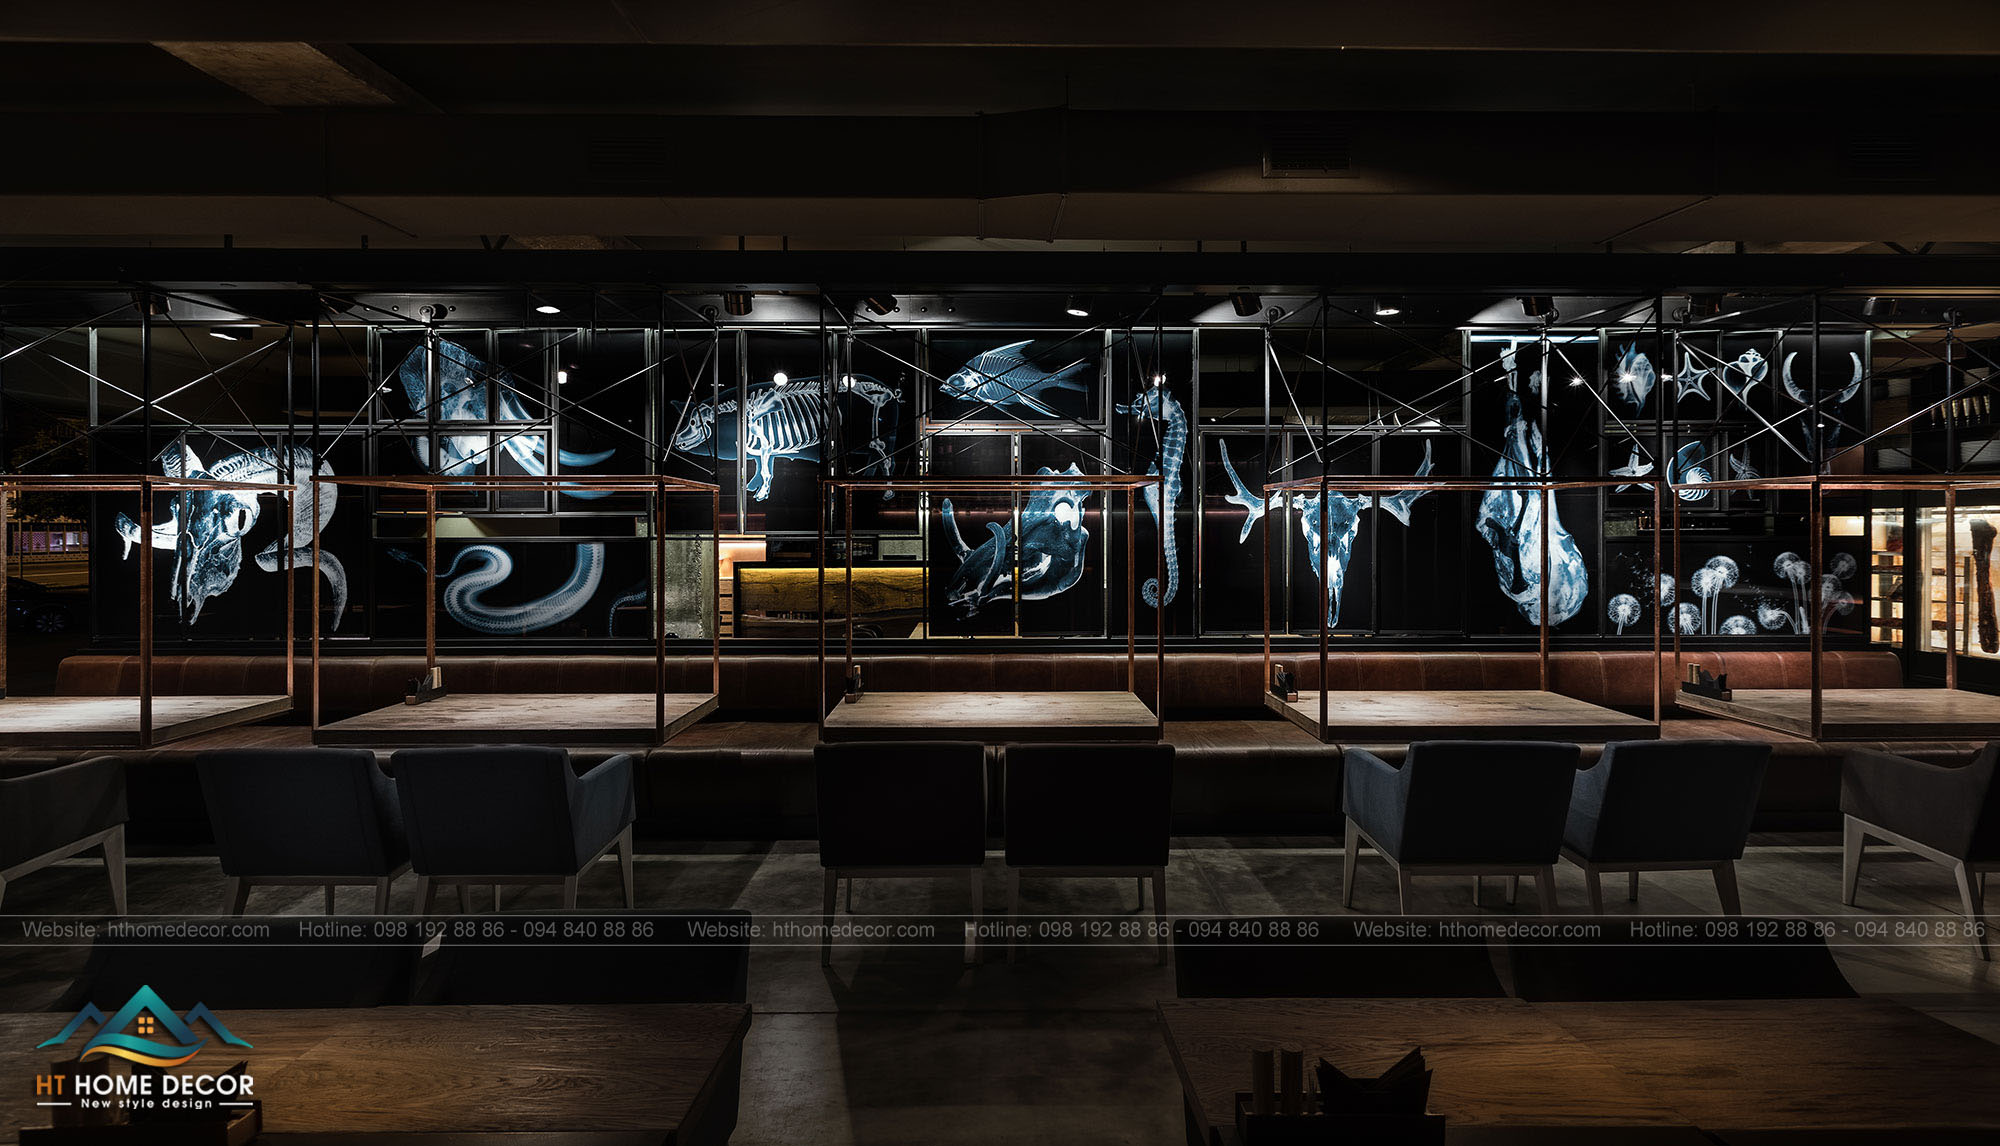 Nội thất của nhà hàng được thực hiện bằng tông màu đen và xám với các đốm sáng màu đồng.